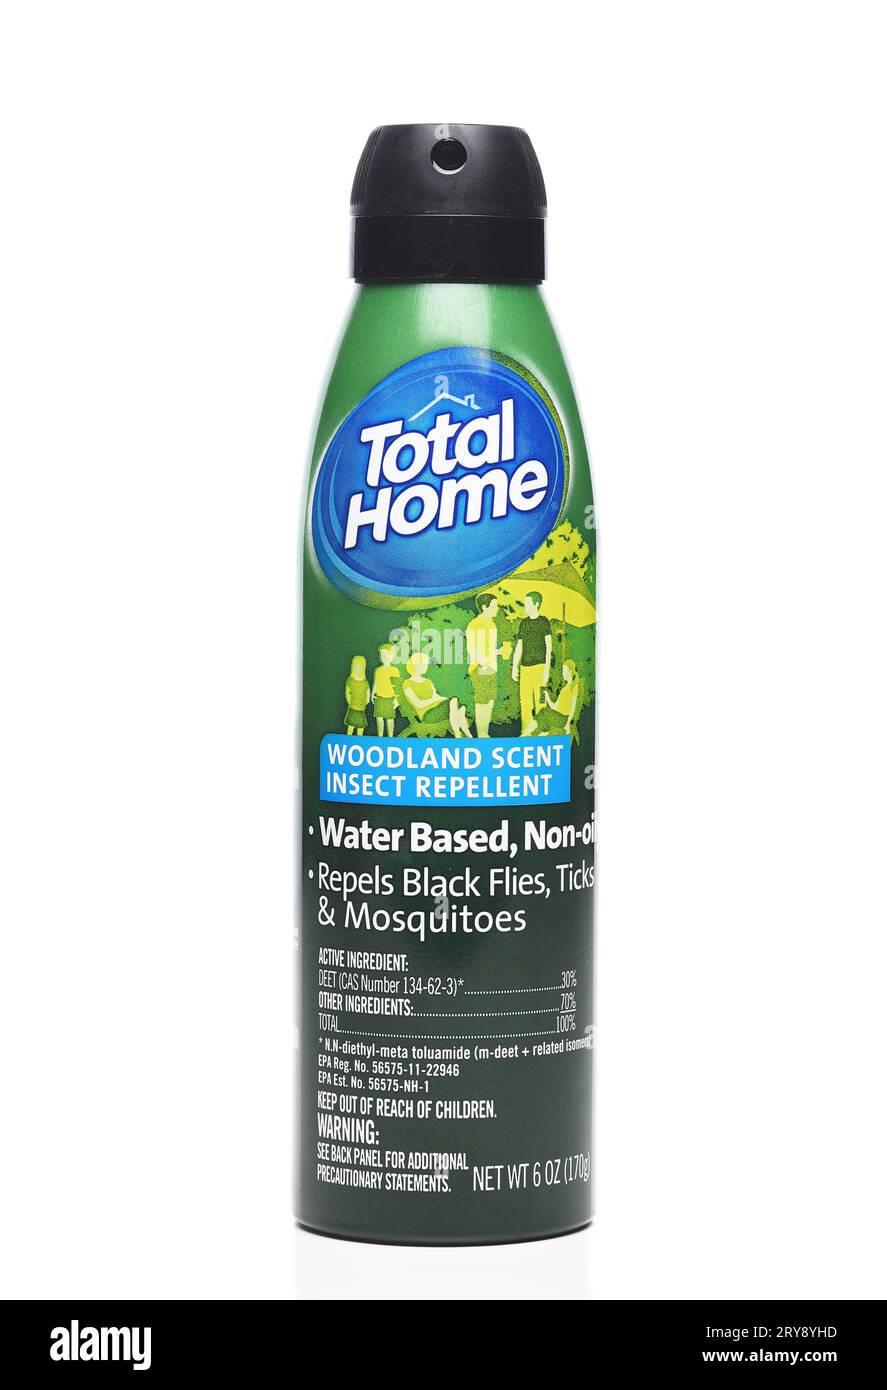 IRVINE, KALIFORNIEN - 26. SEPTEMBER 2023: Eine Dose von Total Home Woodland Scent Insect Repellent. Stockfoto